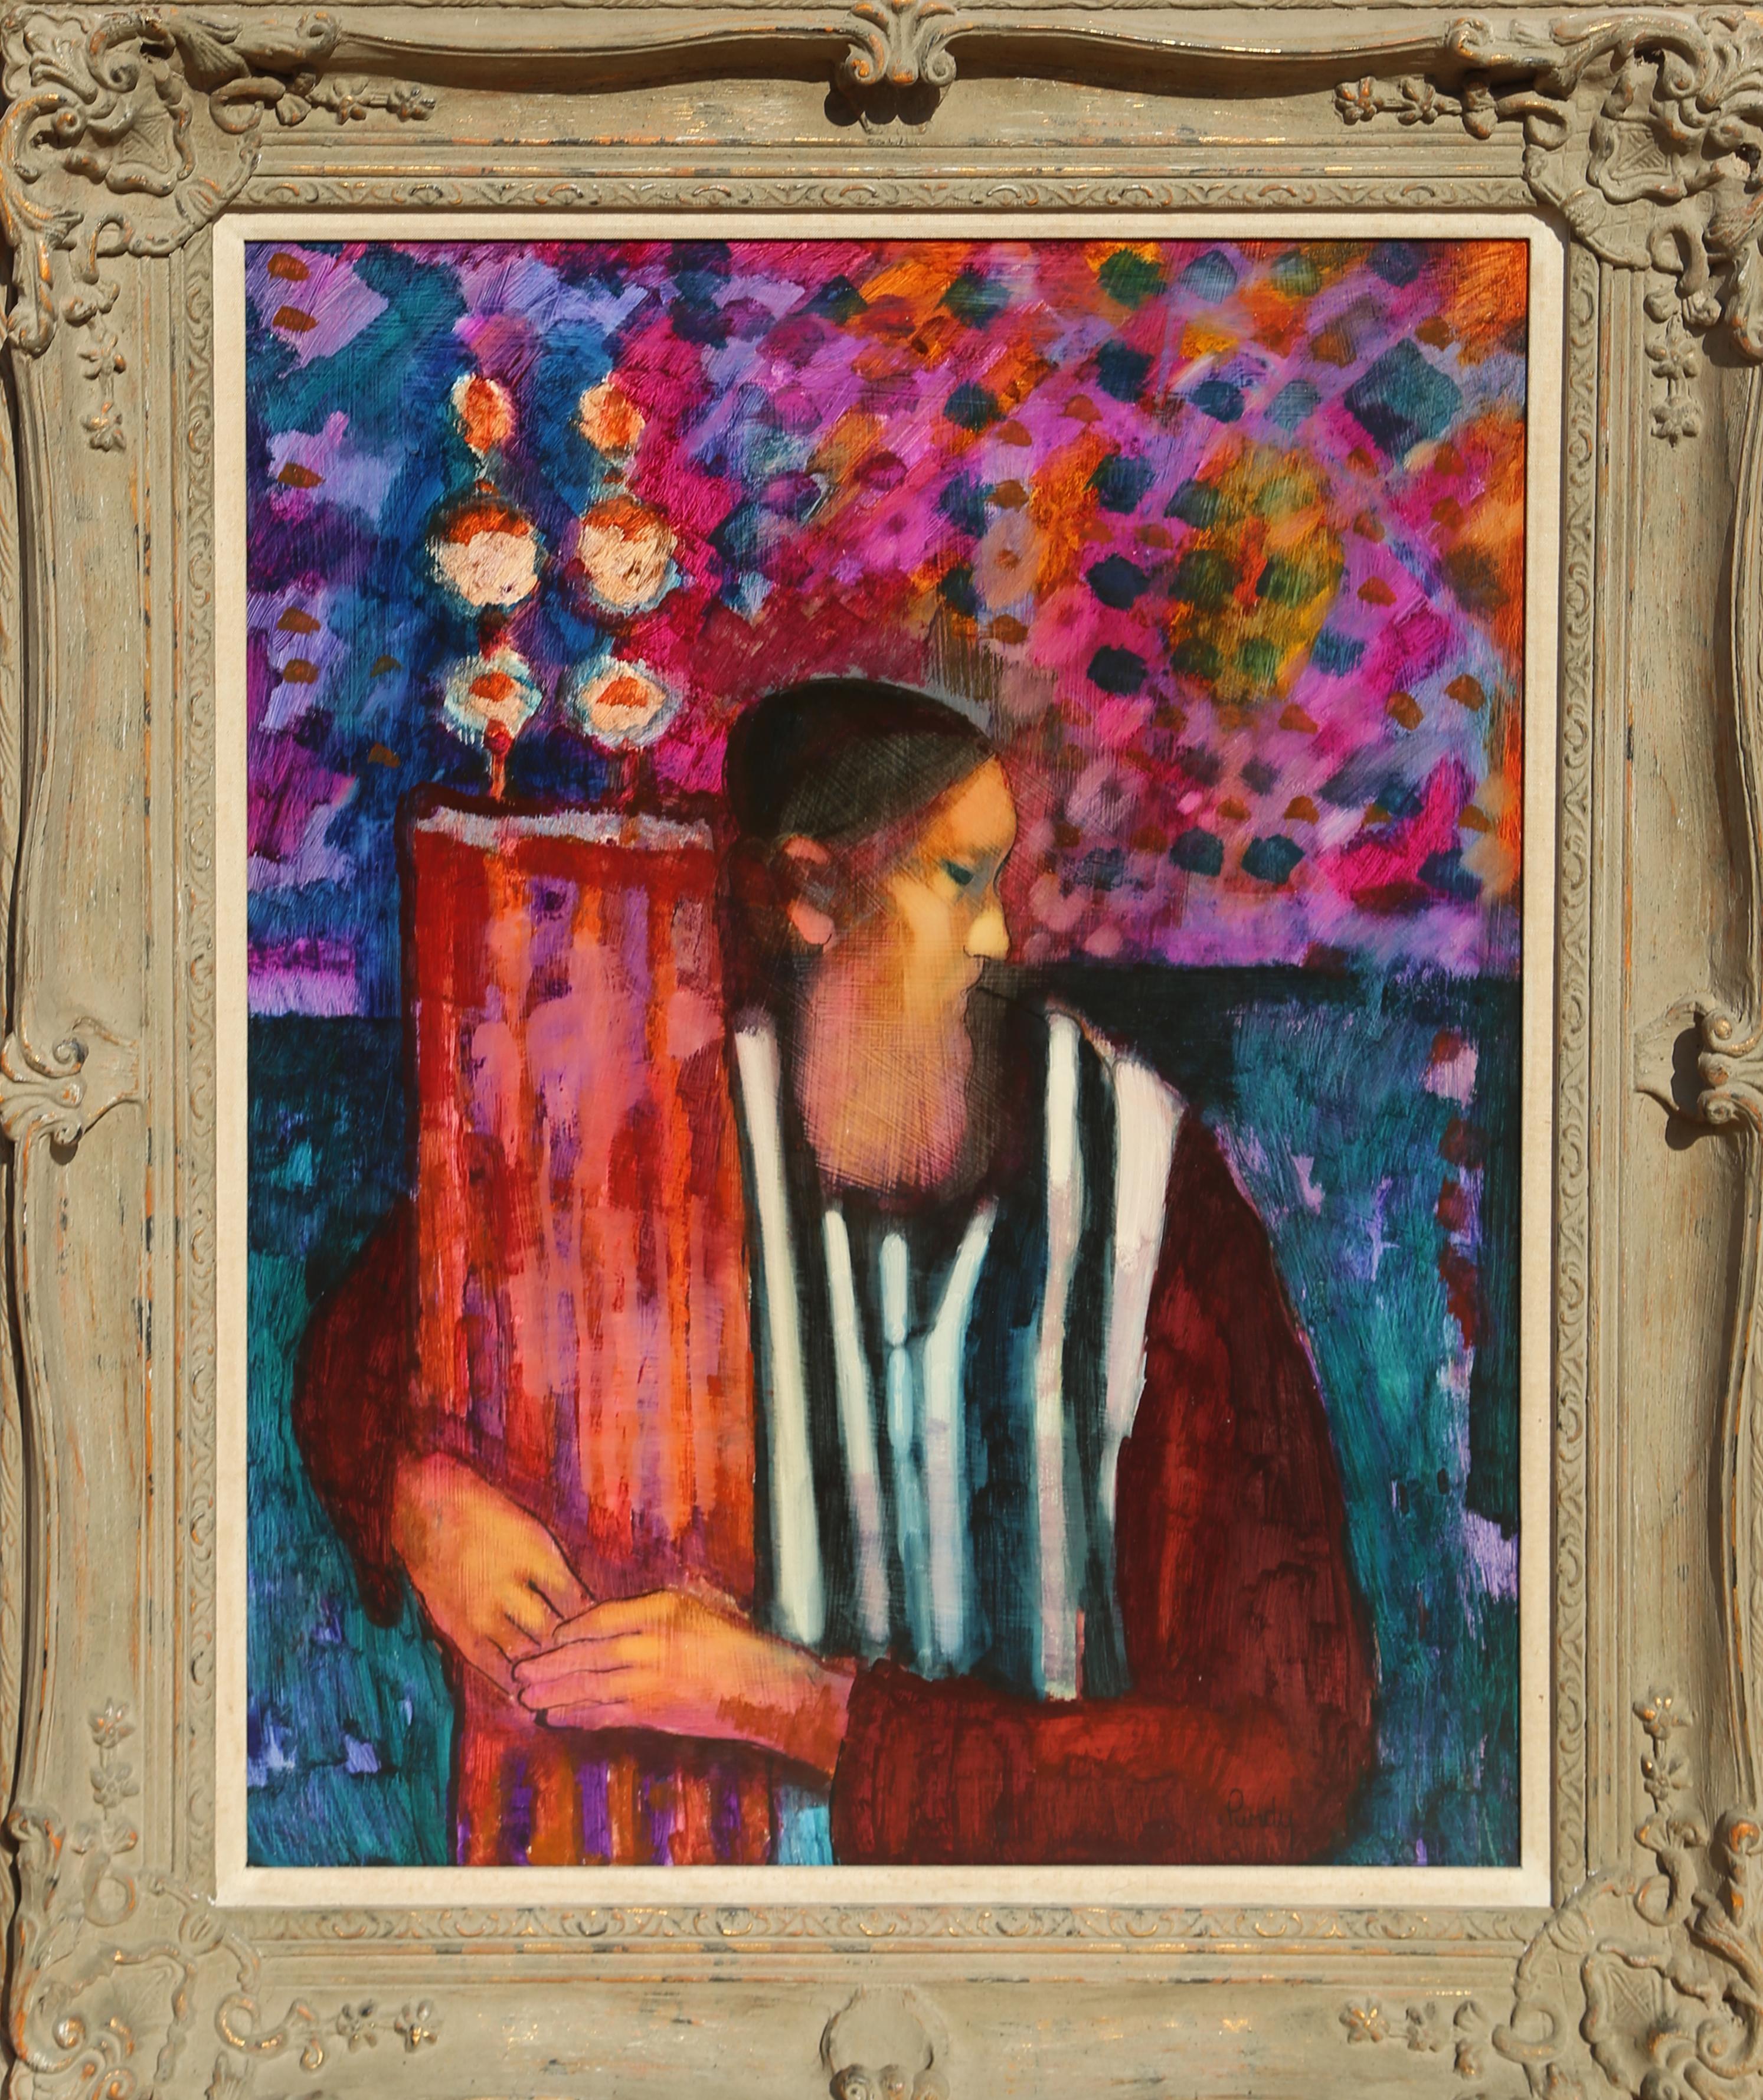 Artiste : Donald Roy Purdy, américain (1924 - )
Titre : Rabbin avec Torah
Année : vers 1970
Médium : Huile sur Masonite, signé à gauche.
Taille : 30 x 22,5 in. (76,2 x 57,15 cm)
Taille du cadre : 38 x 31 pouces
